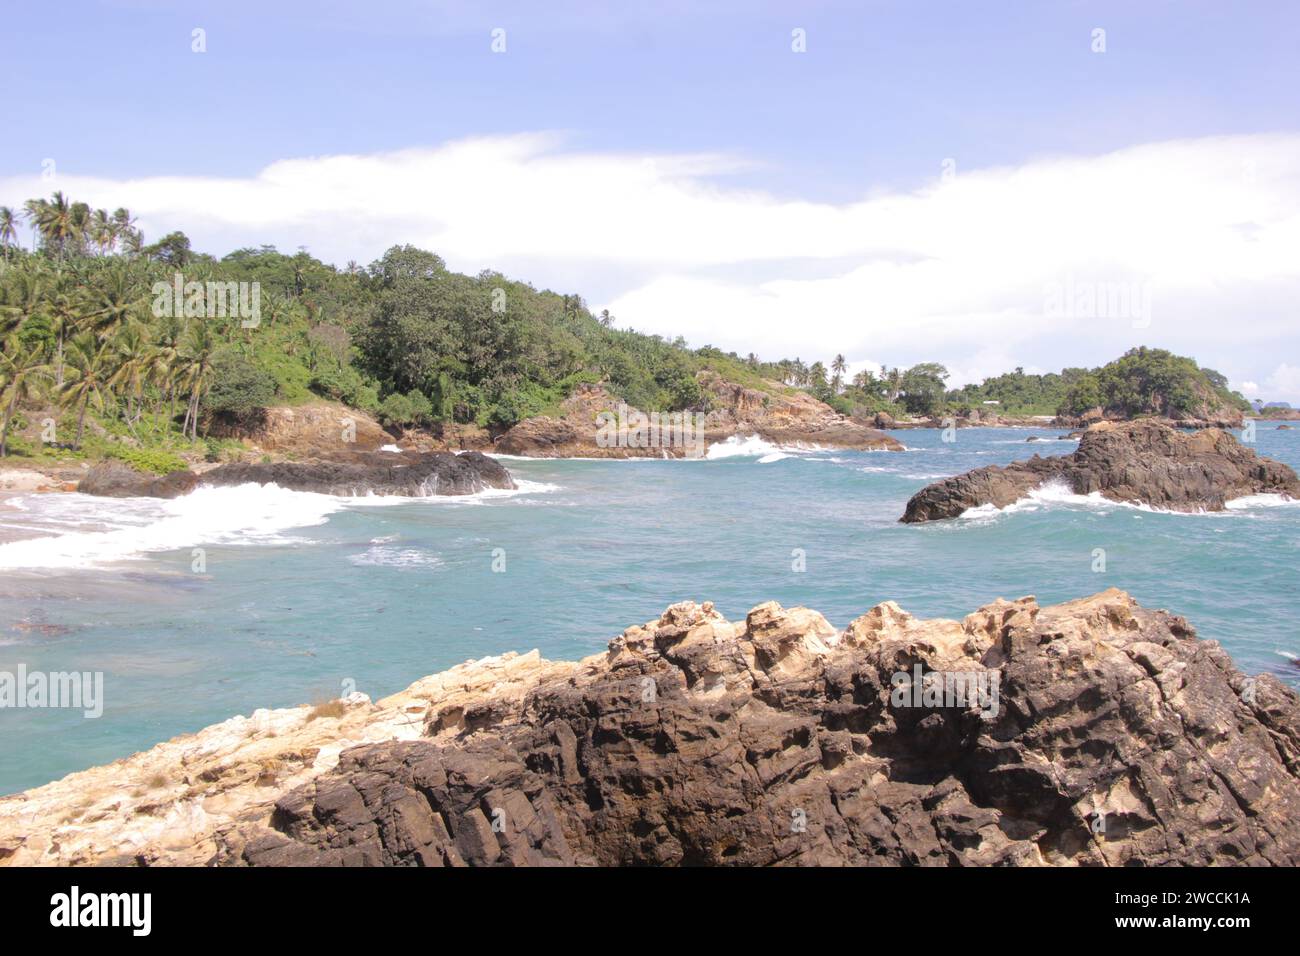 Lampung Strand mit Felsen, Sommerurlaub. Meereslandschaft. Indonesien Stockfoto